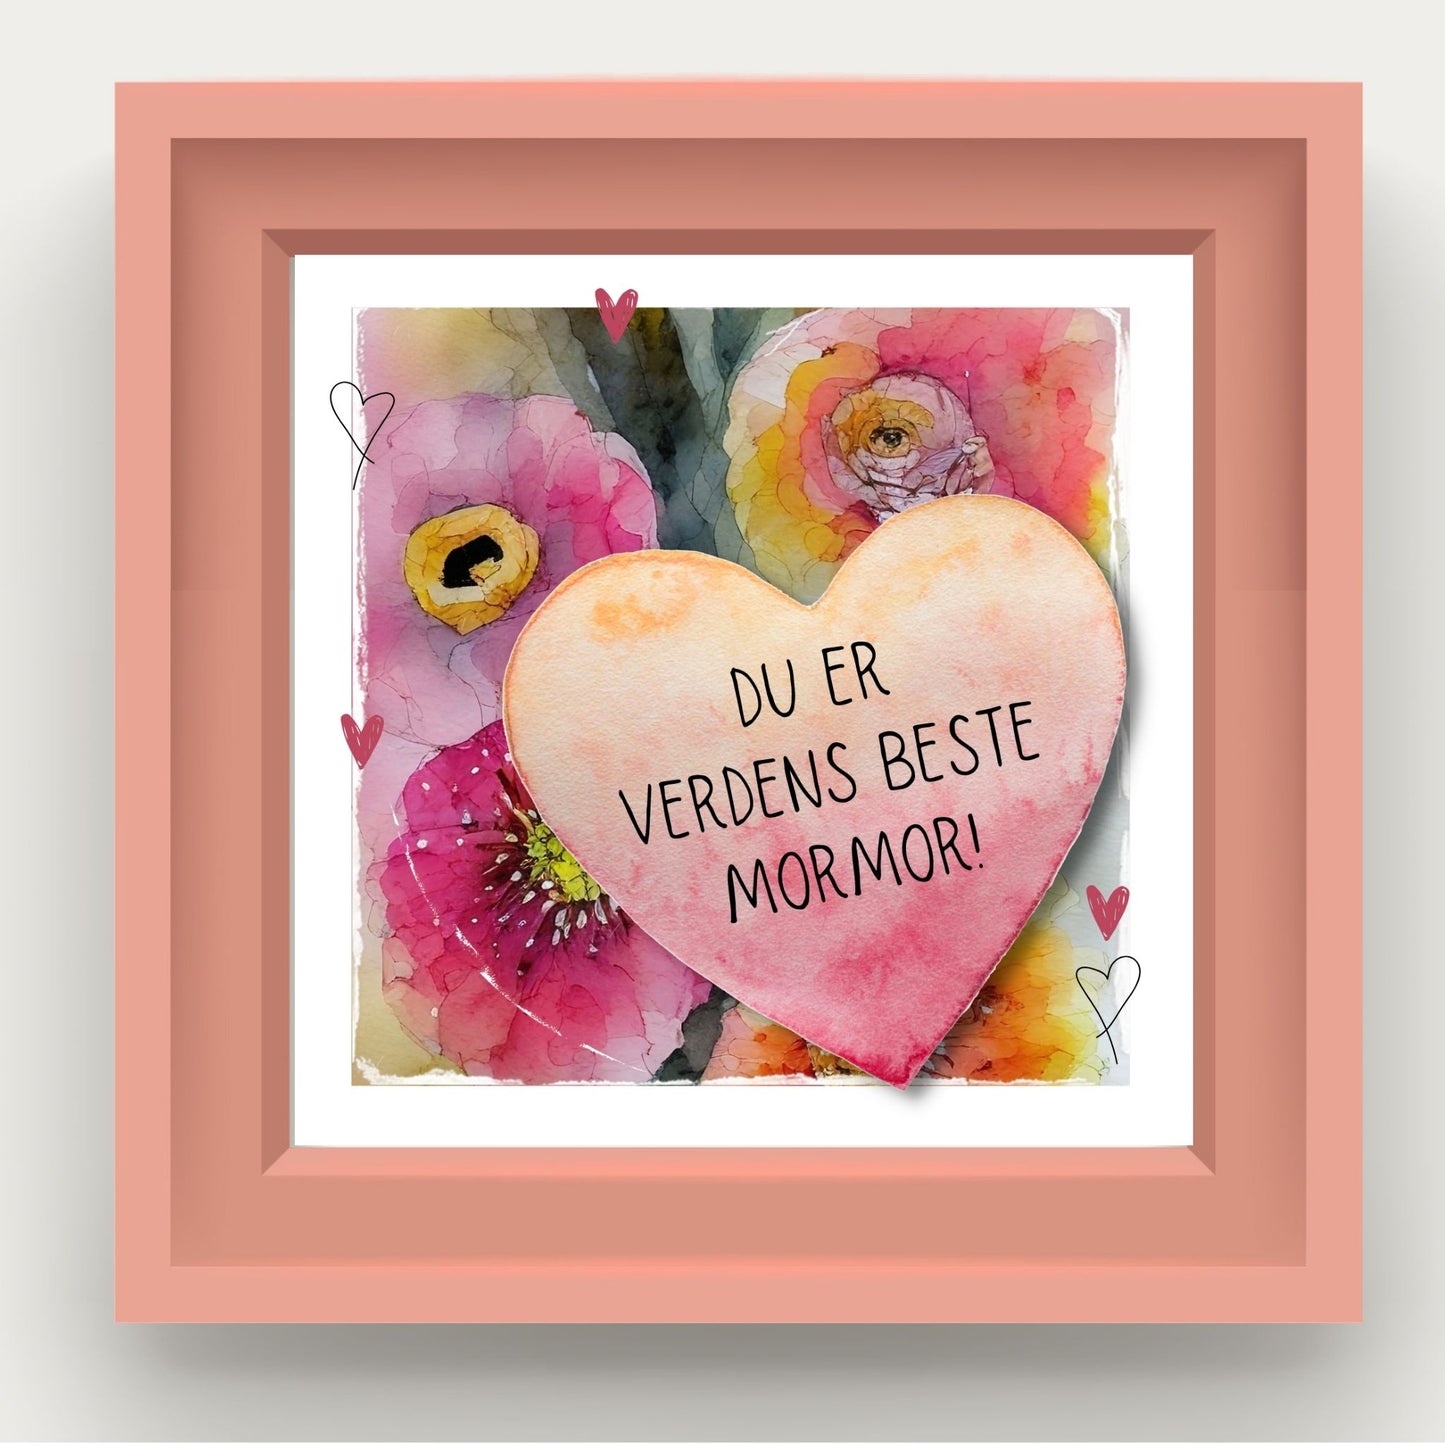 Grafisk plakat med et rosa hjerte påført tekst "Du er verdens beste mormor". Bagrunn i cerise og guloransje blomster. Illustrasjon viser plakat i rosa ramme.